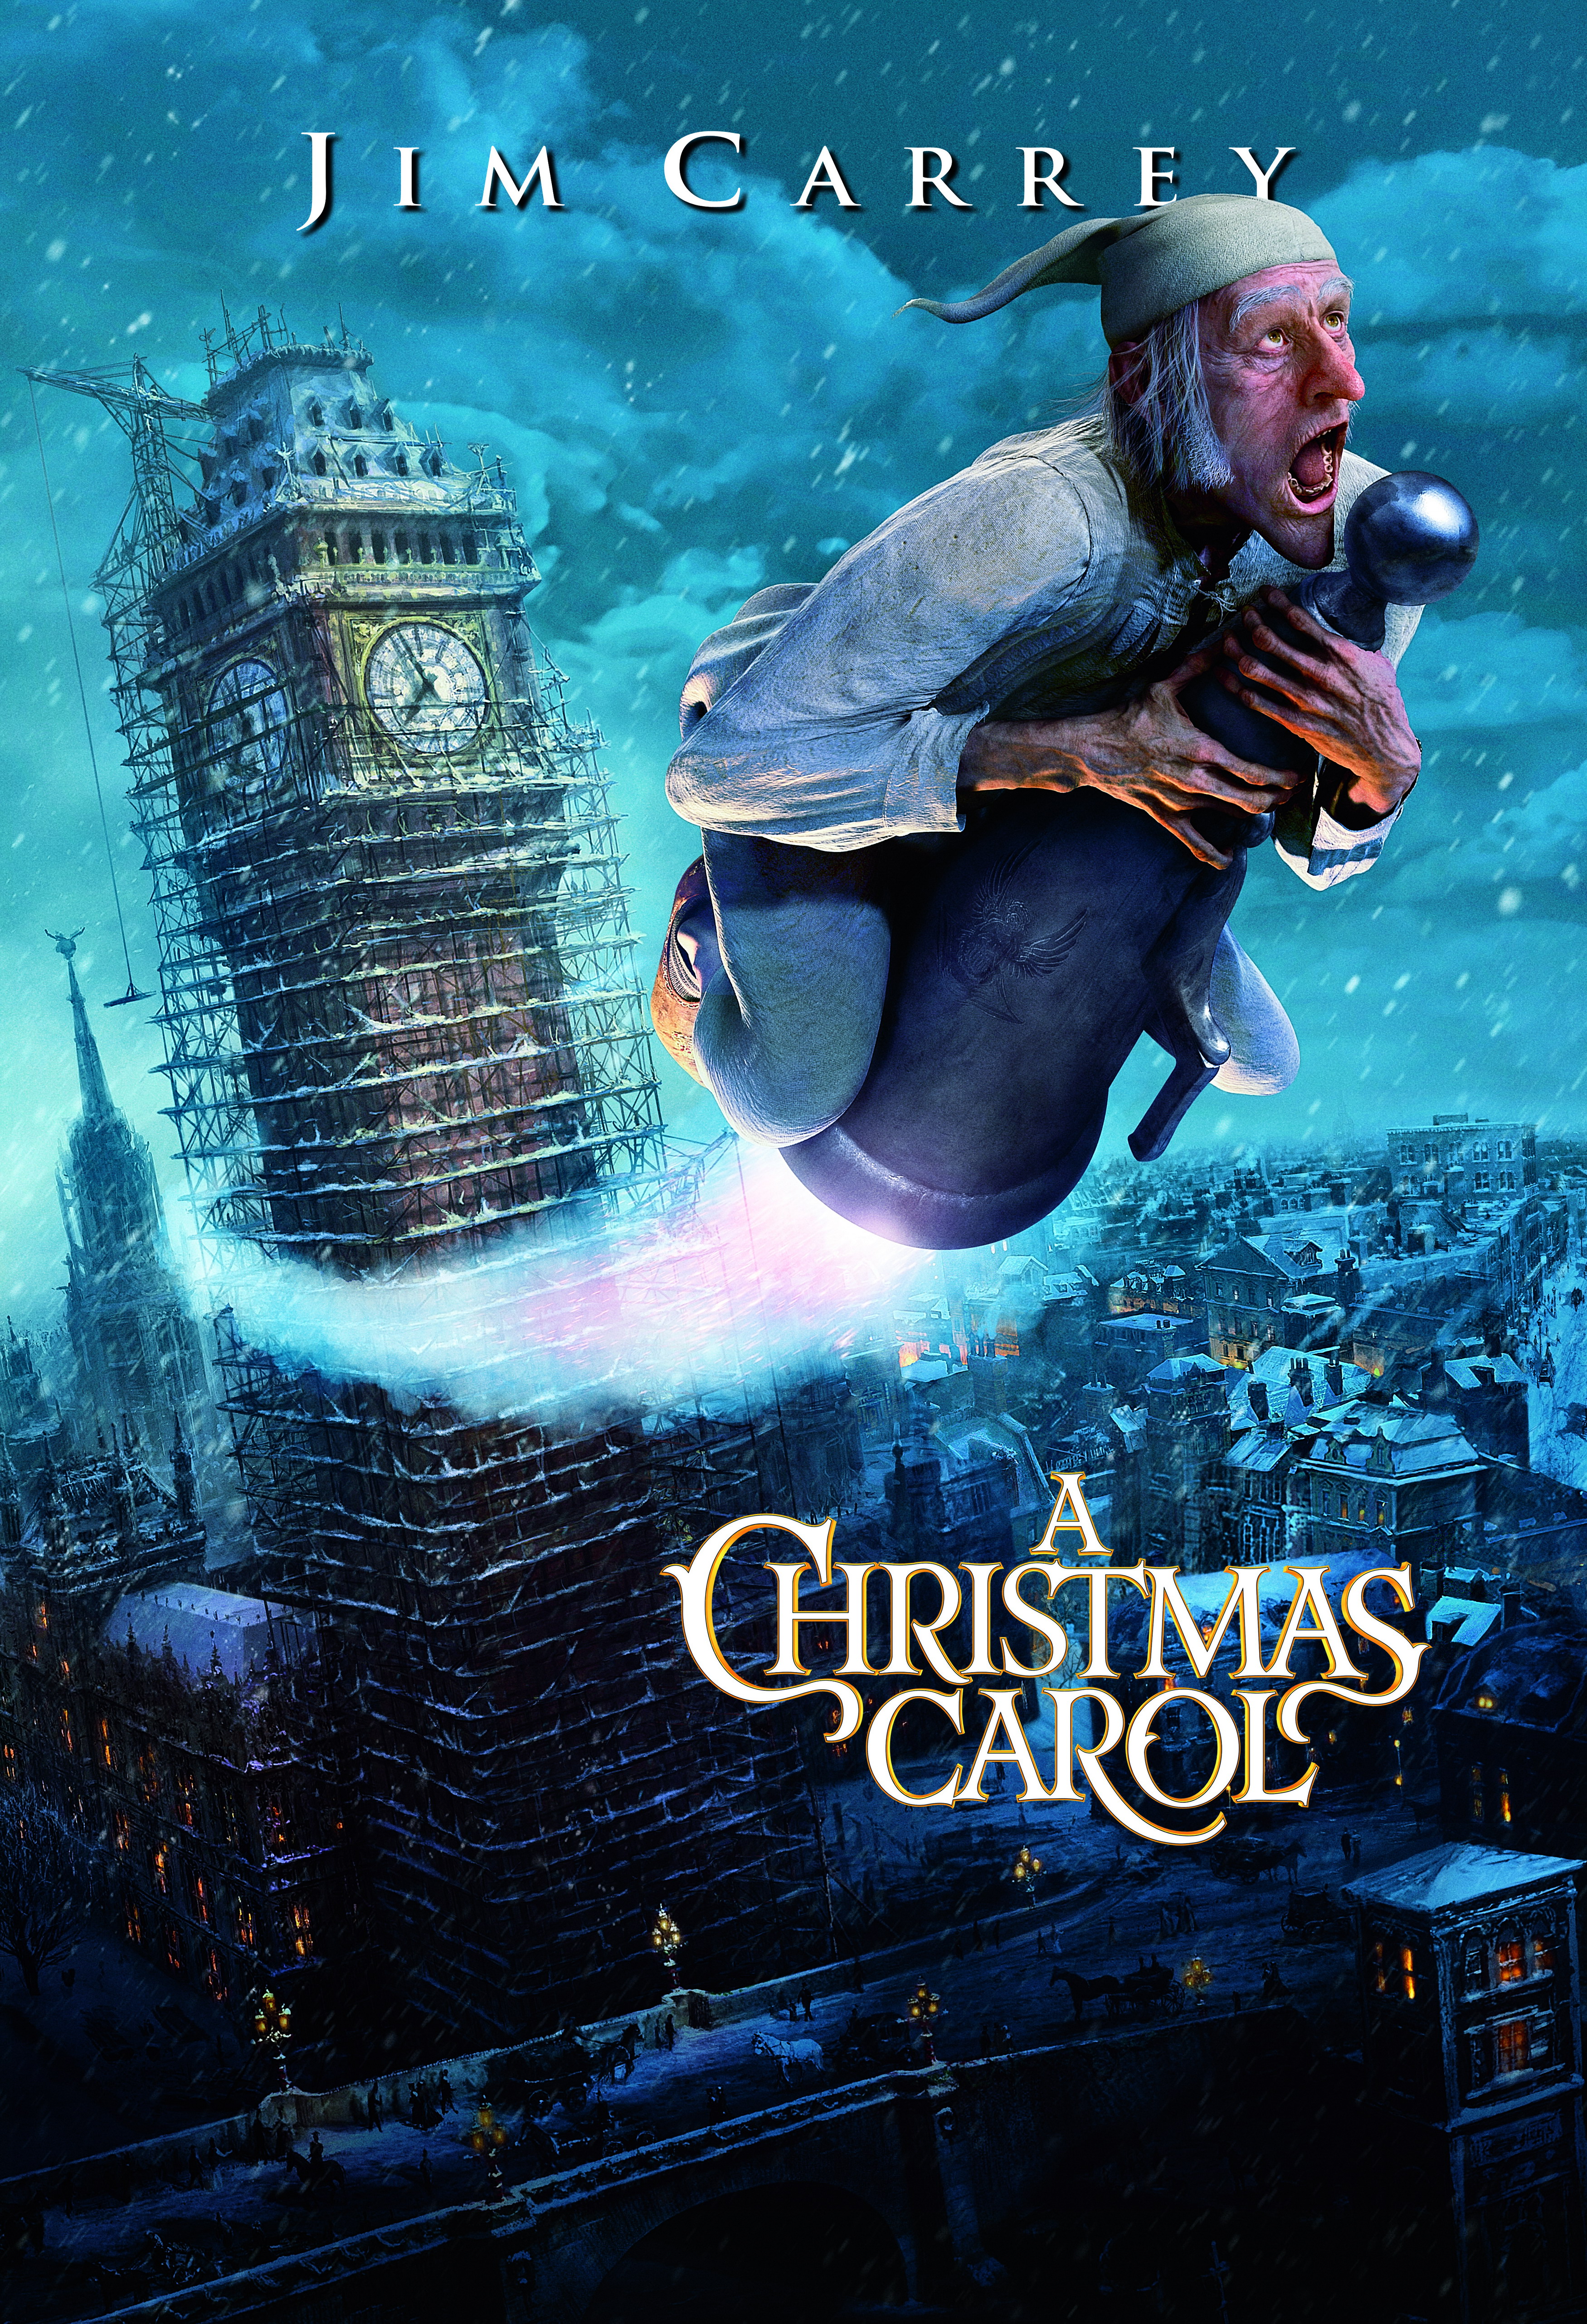 Cuento de navidad (A Christmas Carol) (2009)